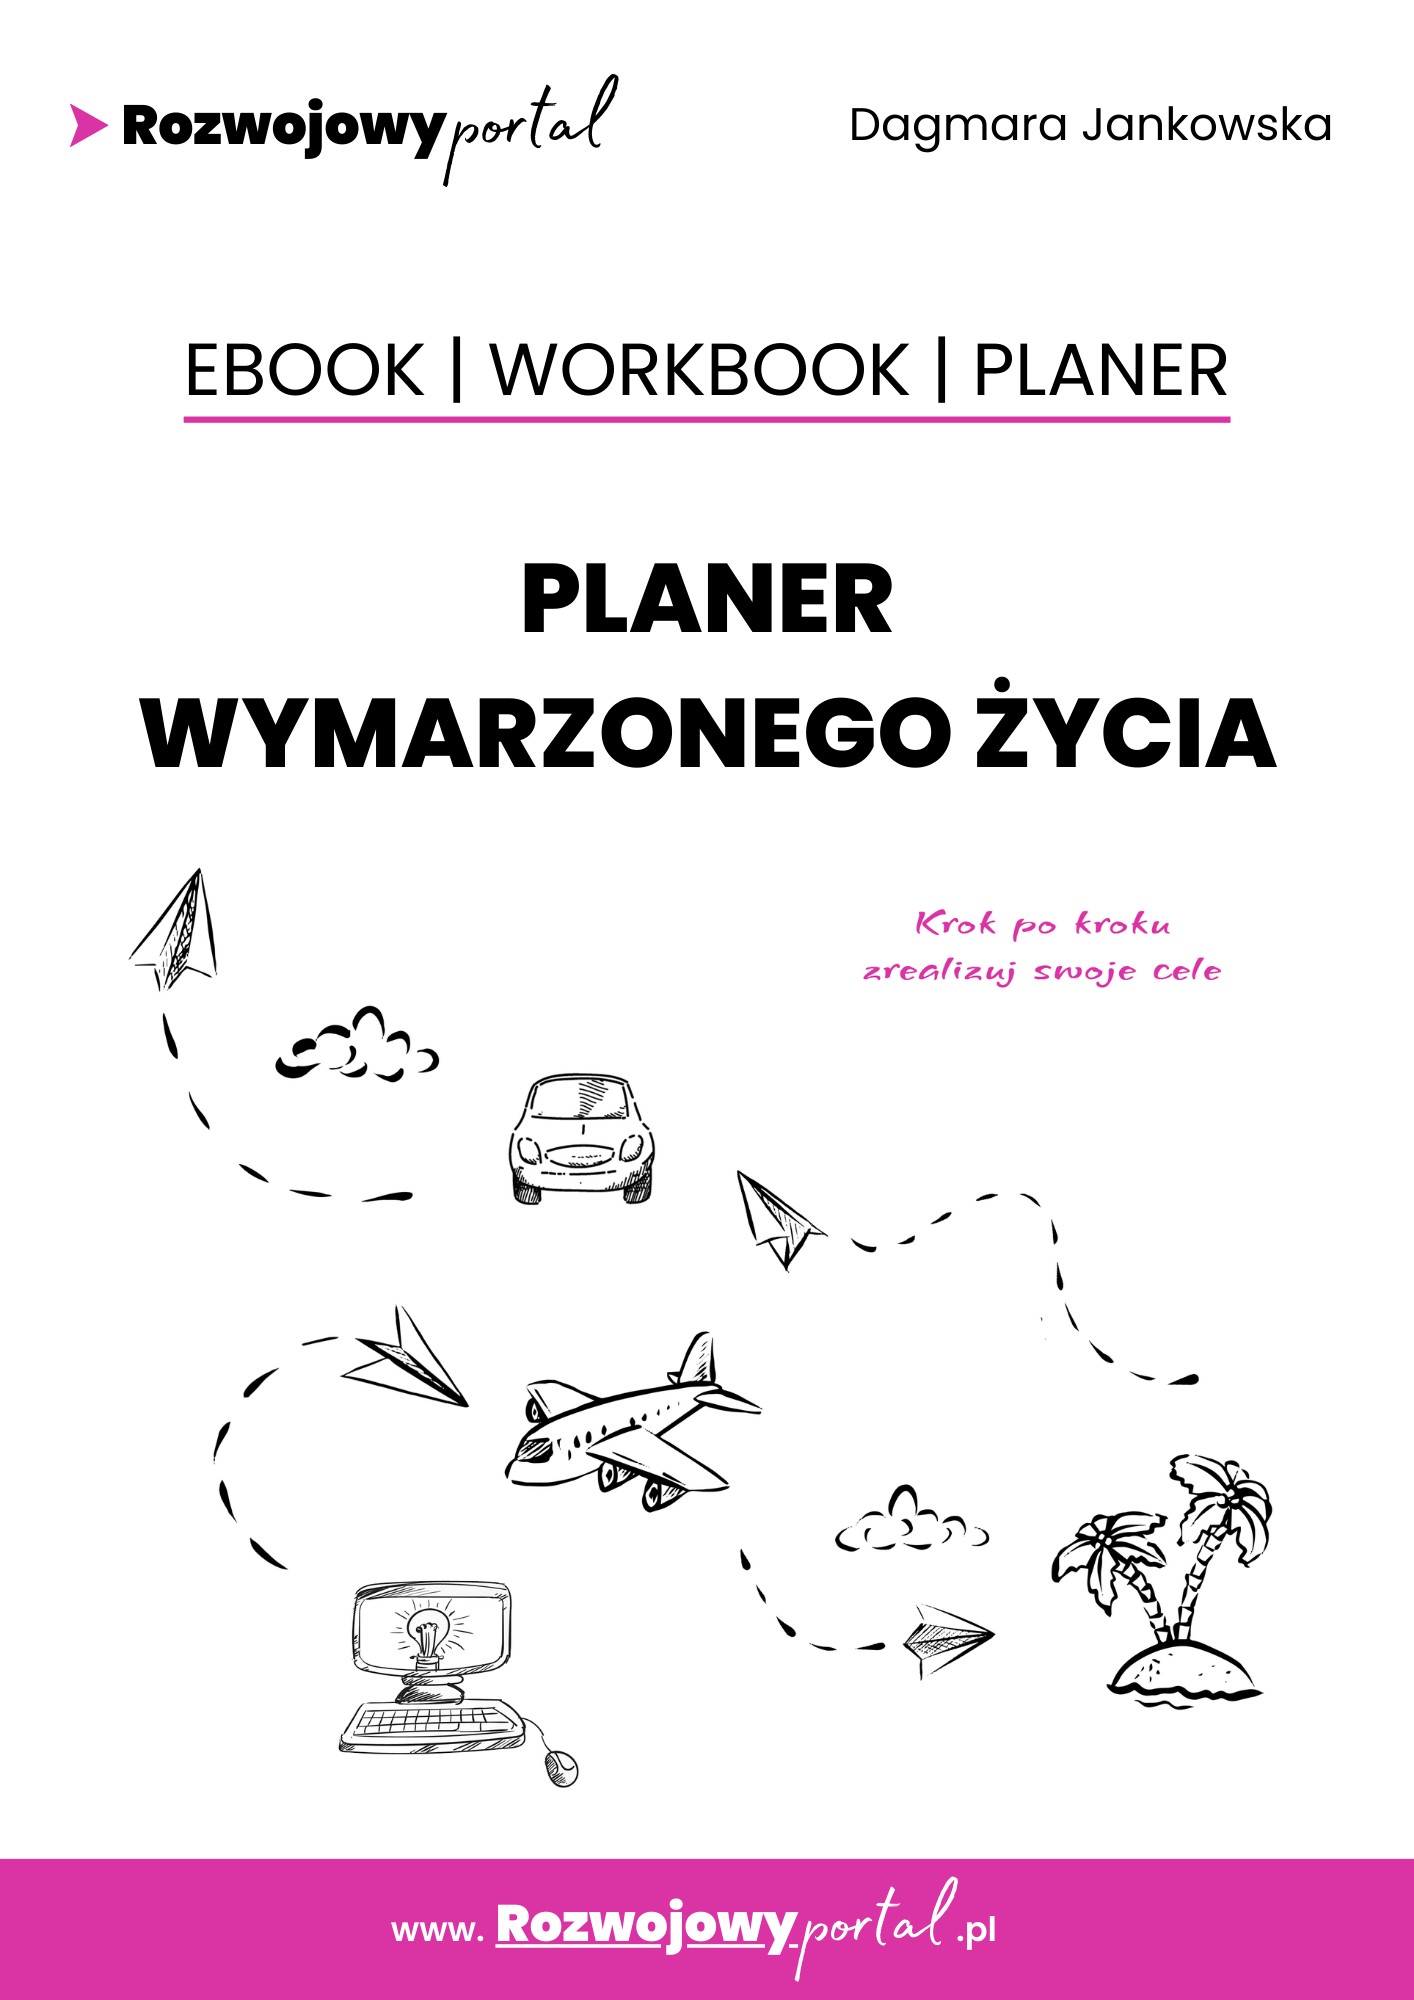 Okładka:Planer wymarzonego życia. Ebook. Workbook. Planer 